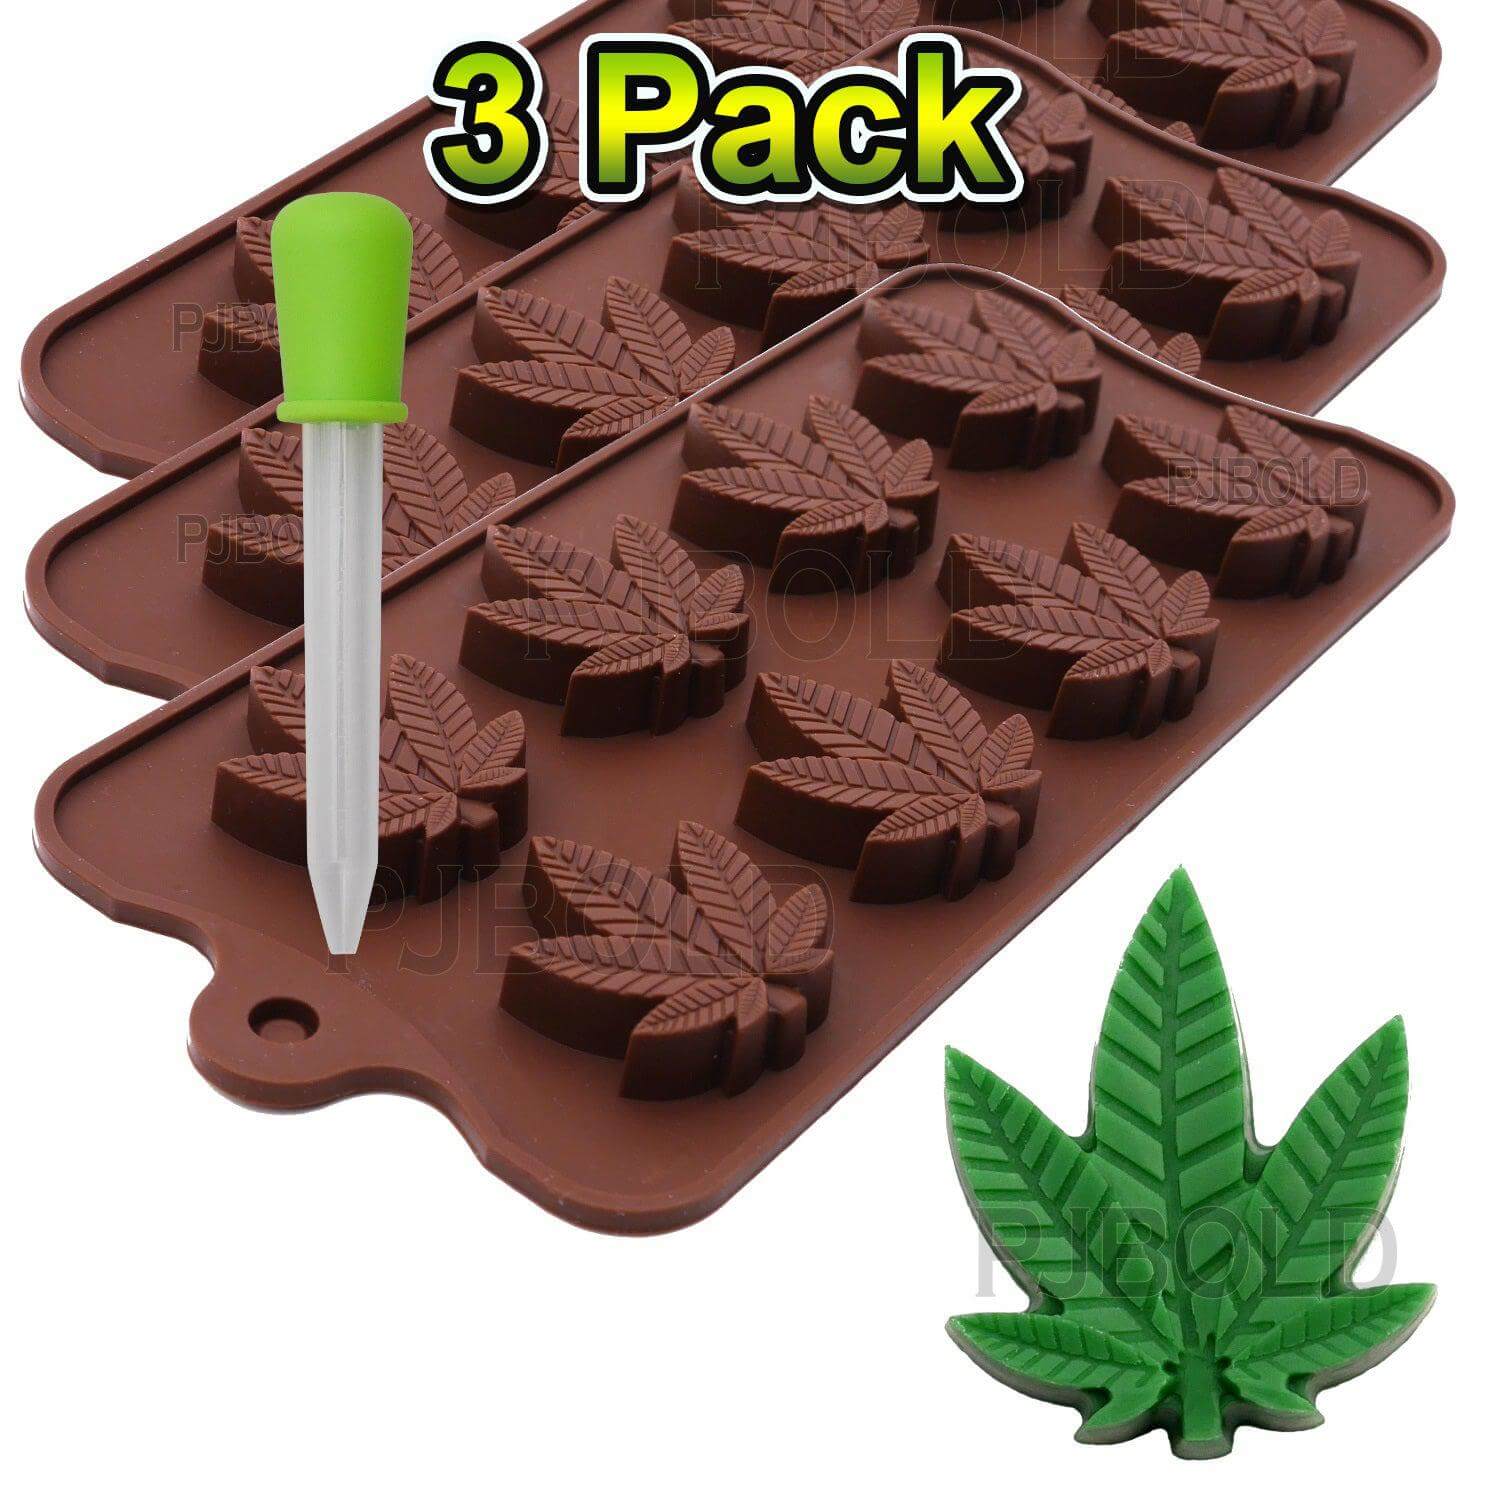 Webake Marijuana Maple Leaf Silicone Candy Molds (2 pack)